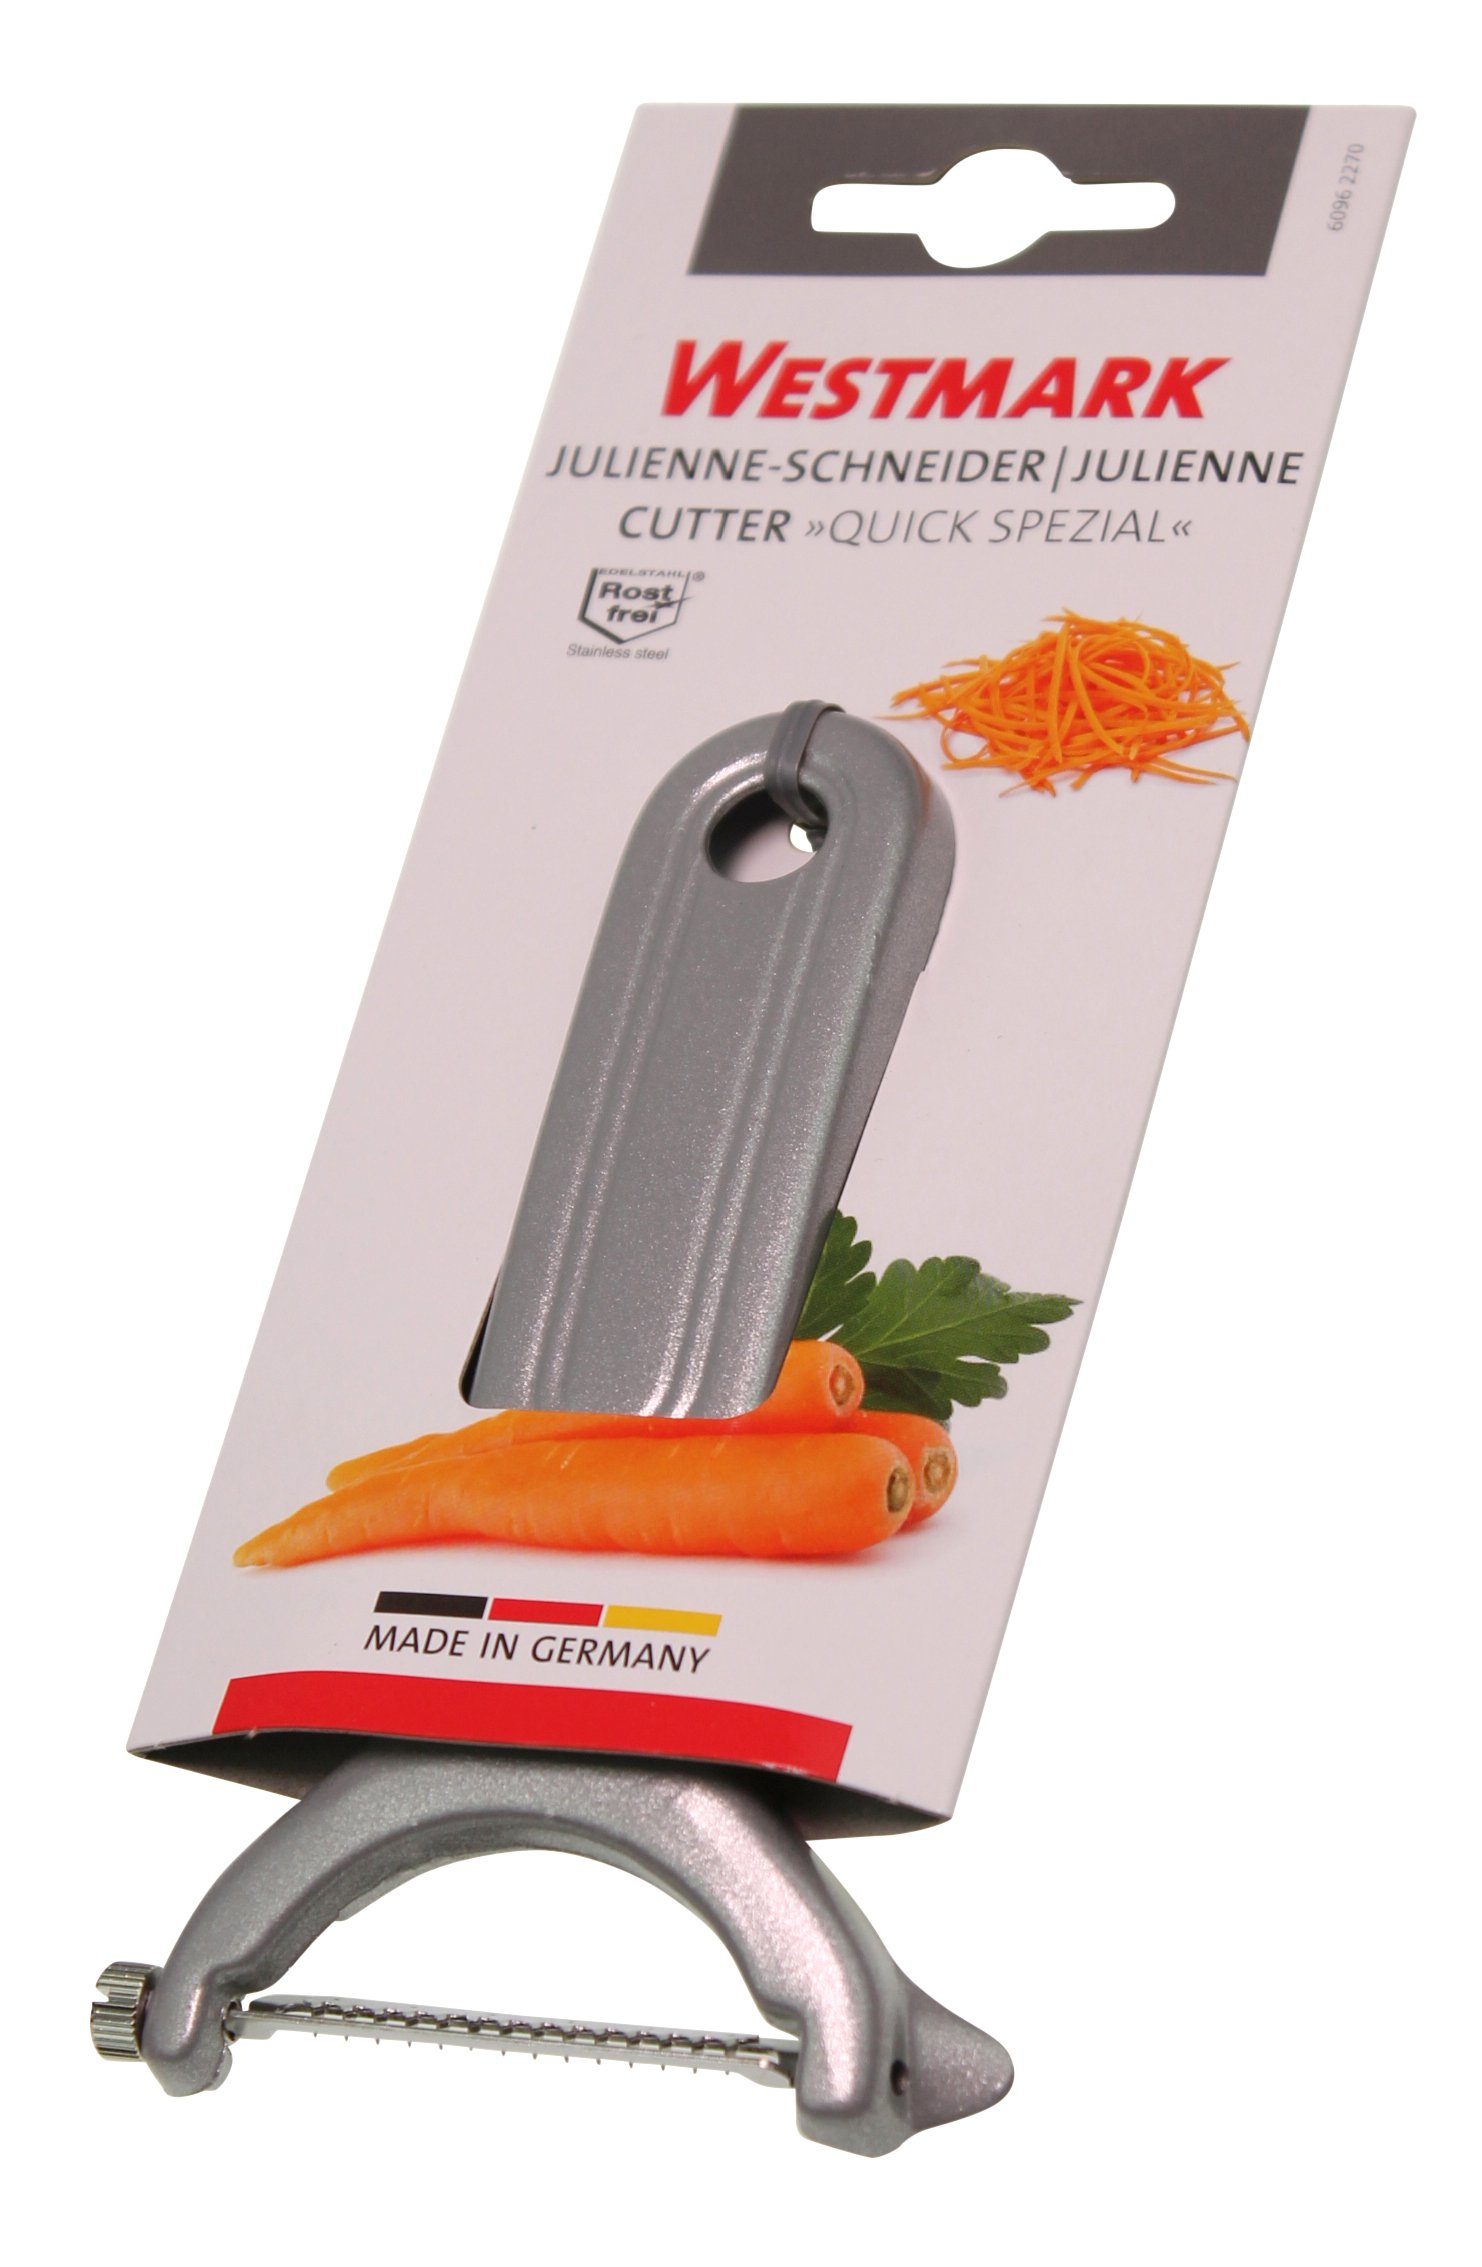 WESTMARK 60962270 in Julienne-Schneider, Trommelreibe Made Germany Westmark Quick-Spezial